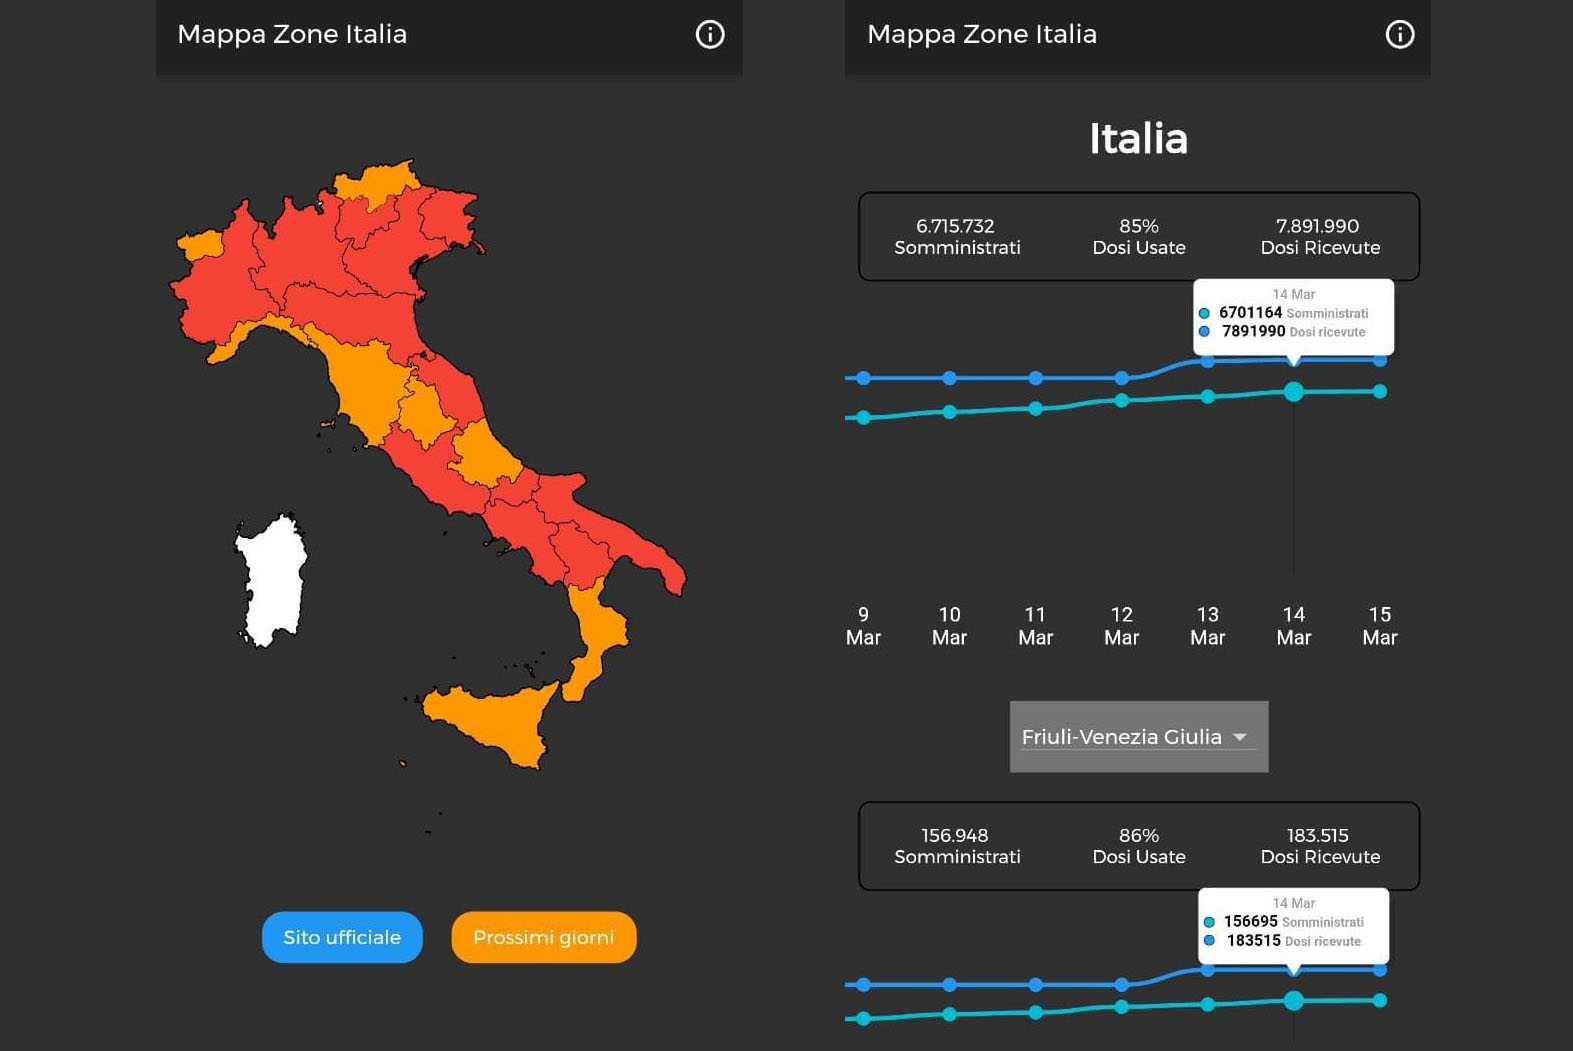 Nuova App “Mappa Zone Italia” realizzata da studenti udinesi in collaborazione con l’Università